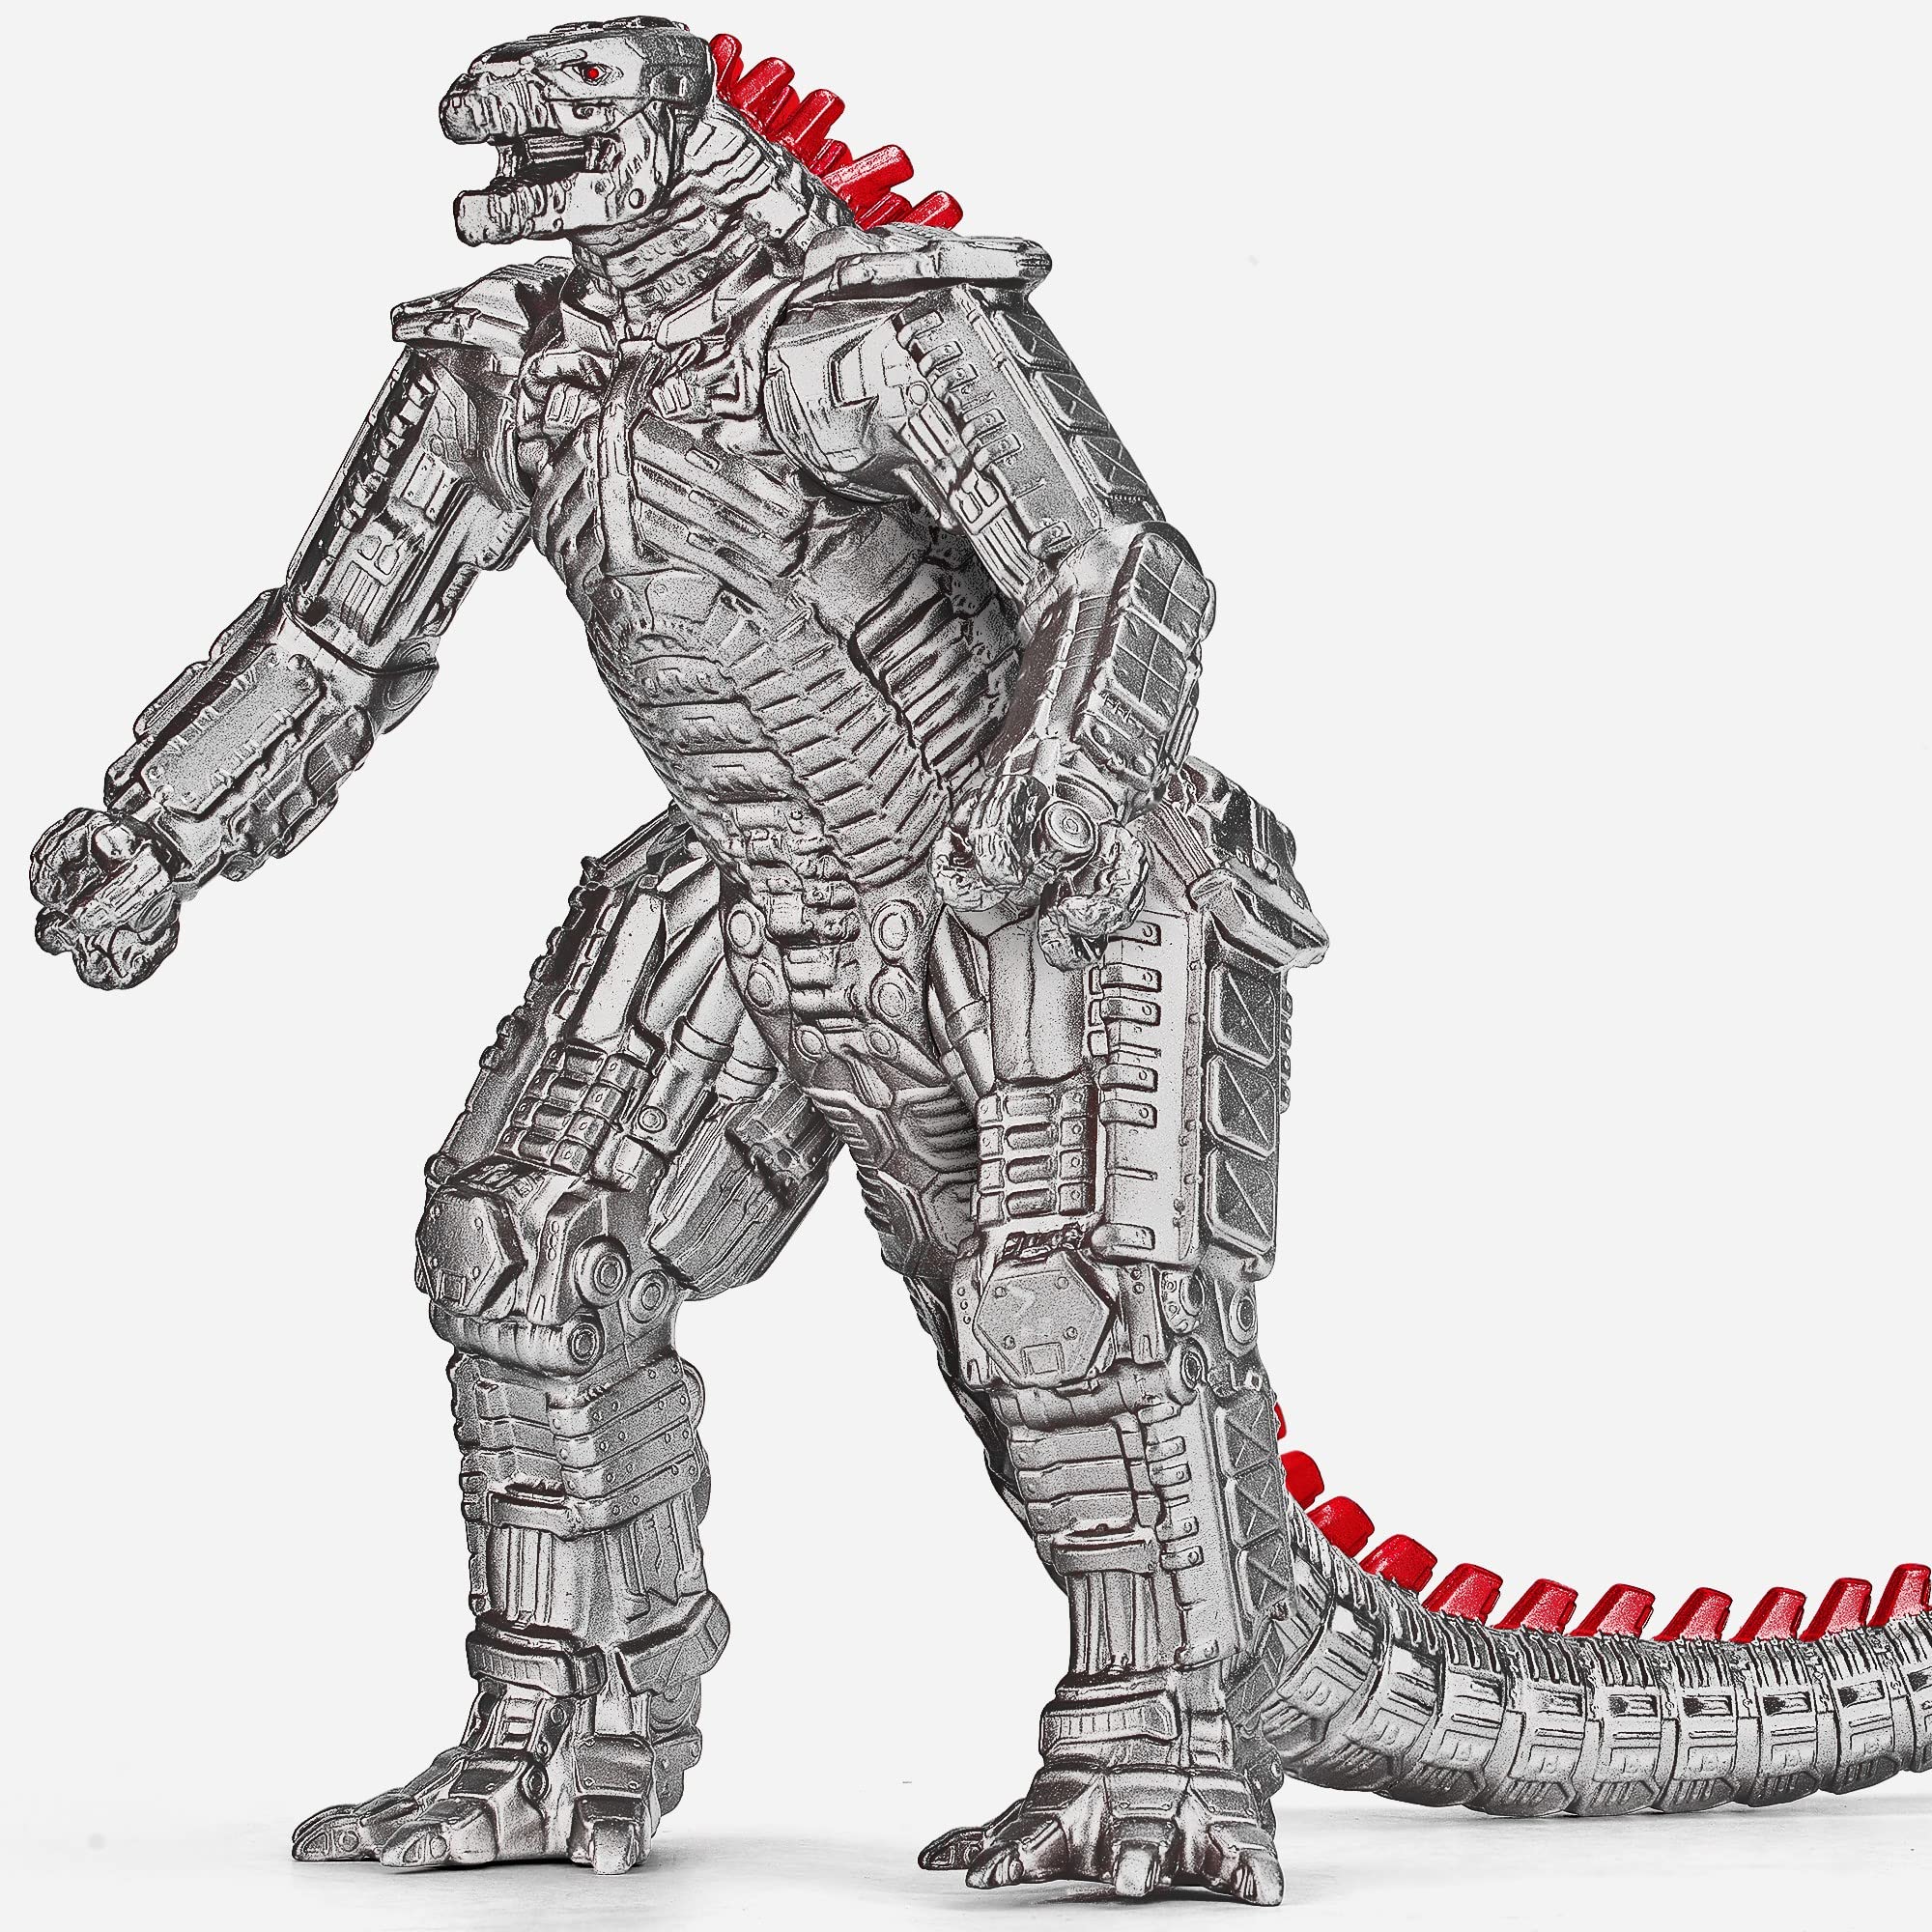 Mechagodzilla: Hãy cùng đến với hình ảnh Mechagodzilla - quái vật nguy hiểm được tự động hóa và được trang bị các vũ khí tối tân. Xem chiếc robot này chiến đấu với chính King Kong cùng Godzilla sẽ là một trải nghiệm rất thú vị cho các fan hâm mộ phim kinh điển.